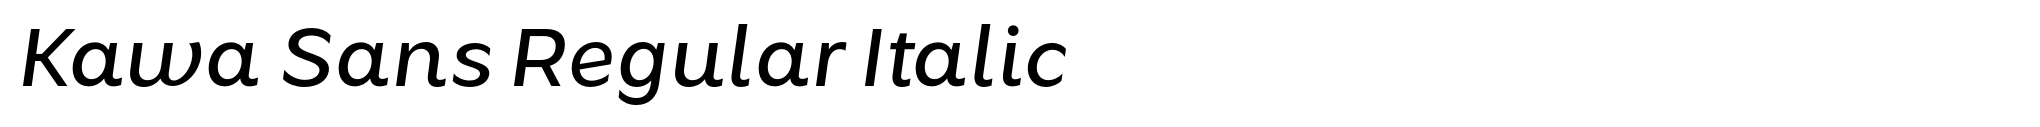 Kawa Sans Regular Italic image